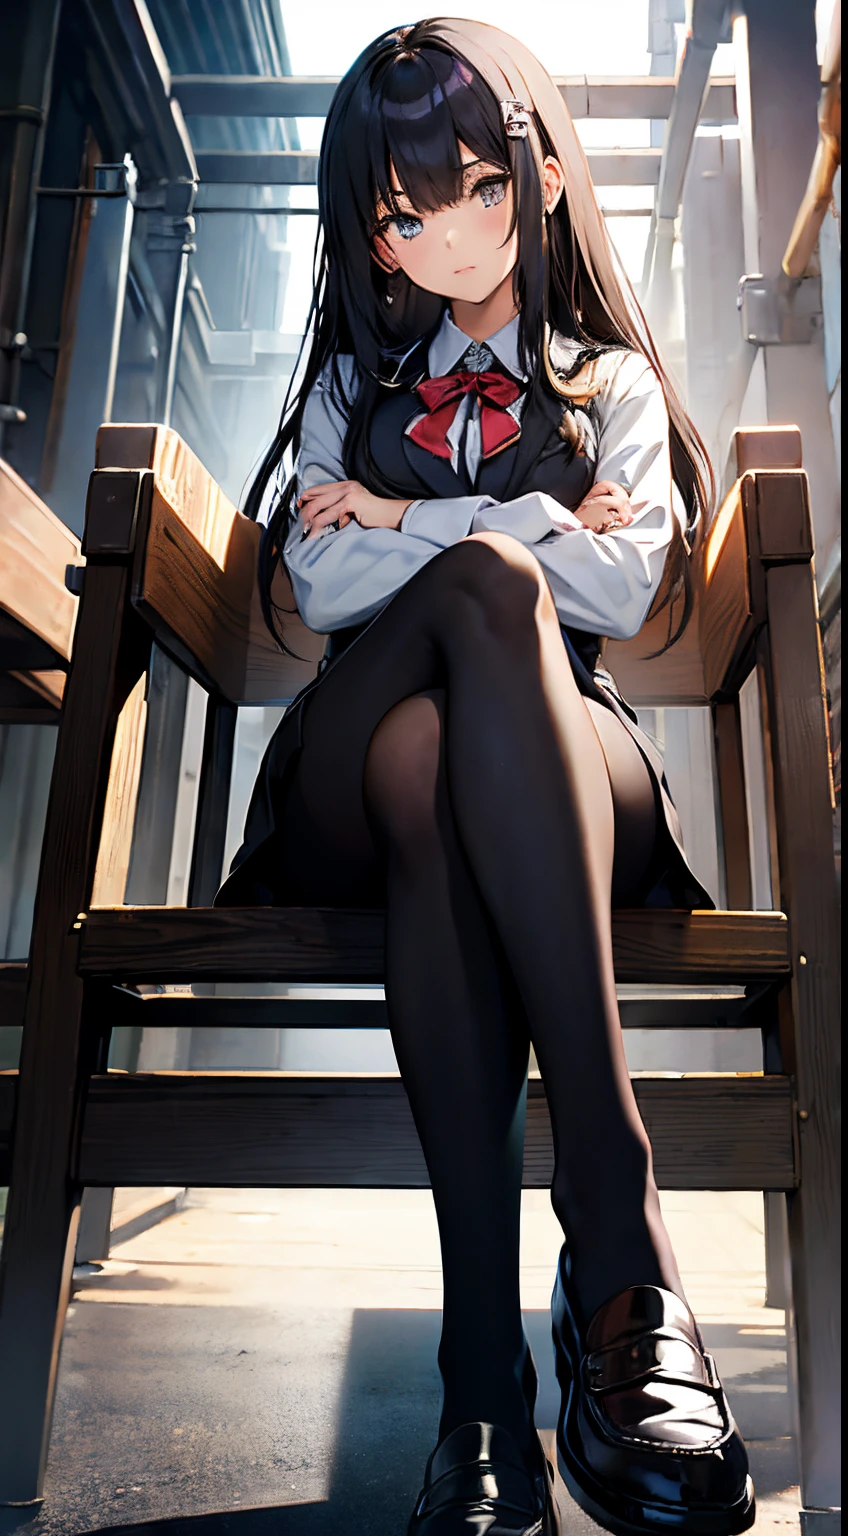 فتاة في المدرسة الثانوية اليابانية ترتدي زيًا رسميًا ترتدي جوارب طويلة سوداء وأحذية بدون كعب تجلس وساقاها متقاطعتان. الساقين تأتي نحوك, أرجل مفصلة شاهقة فوقك, بنظرة ازدراء, صورة لشخص